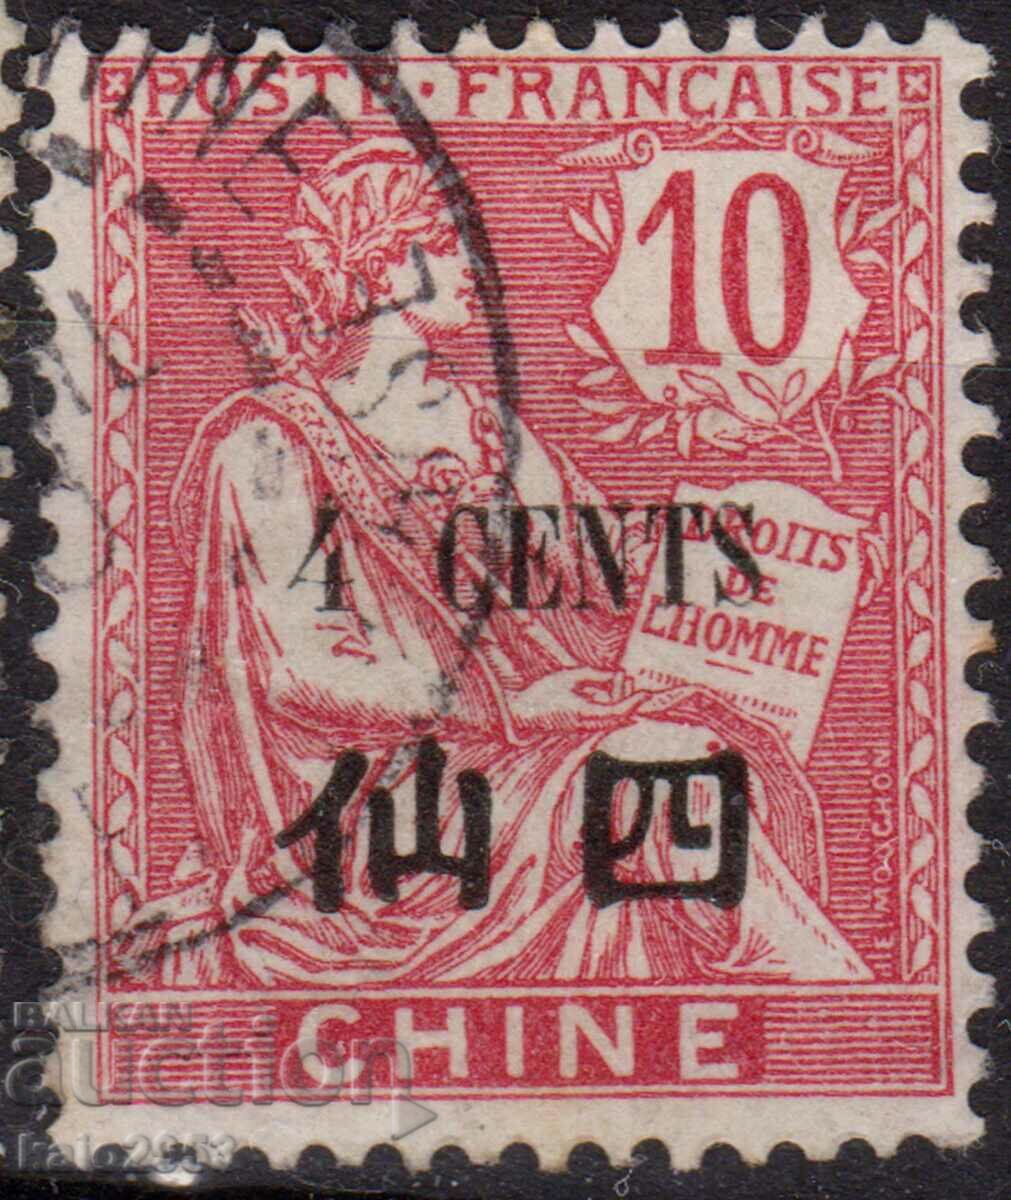 Γαλλία/Ταχυδρομείο στην Κίνα-1905-Allegory Postmark for Canton, σφραγίδα ταχυδρομείου